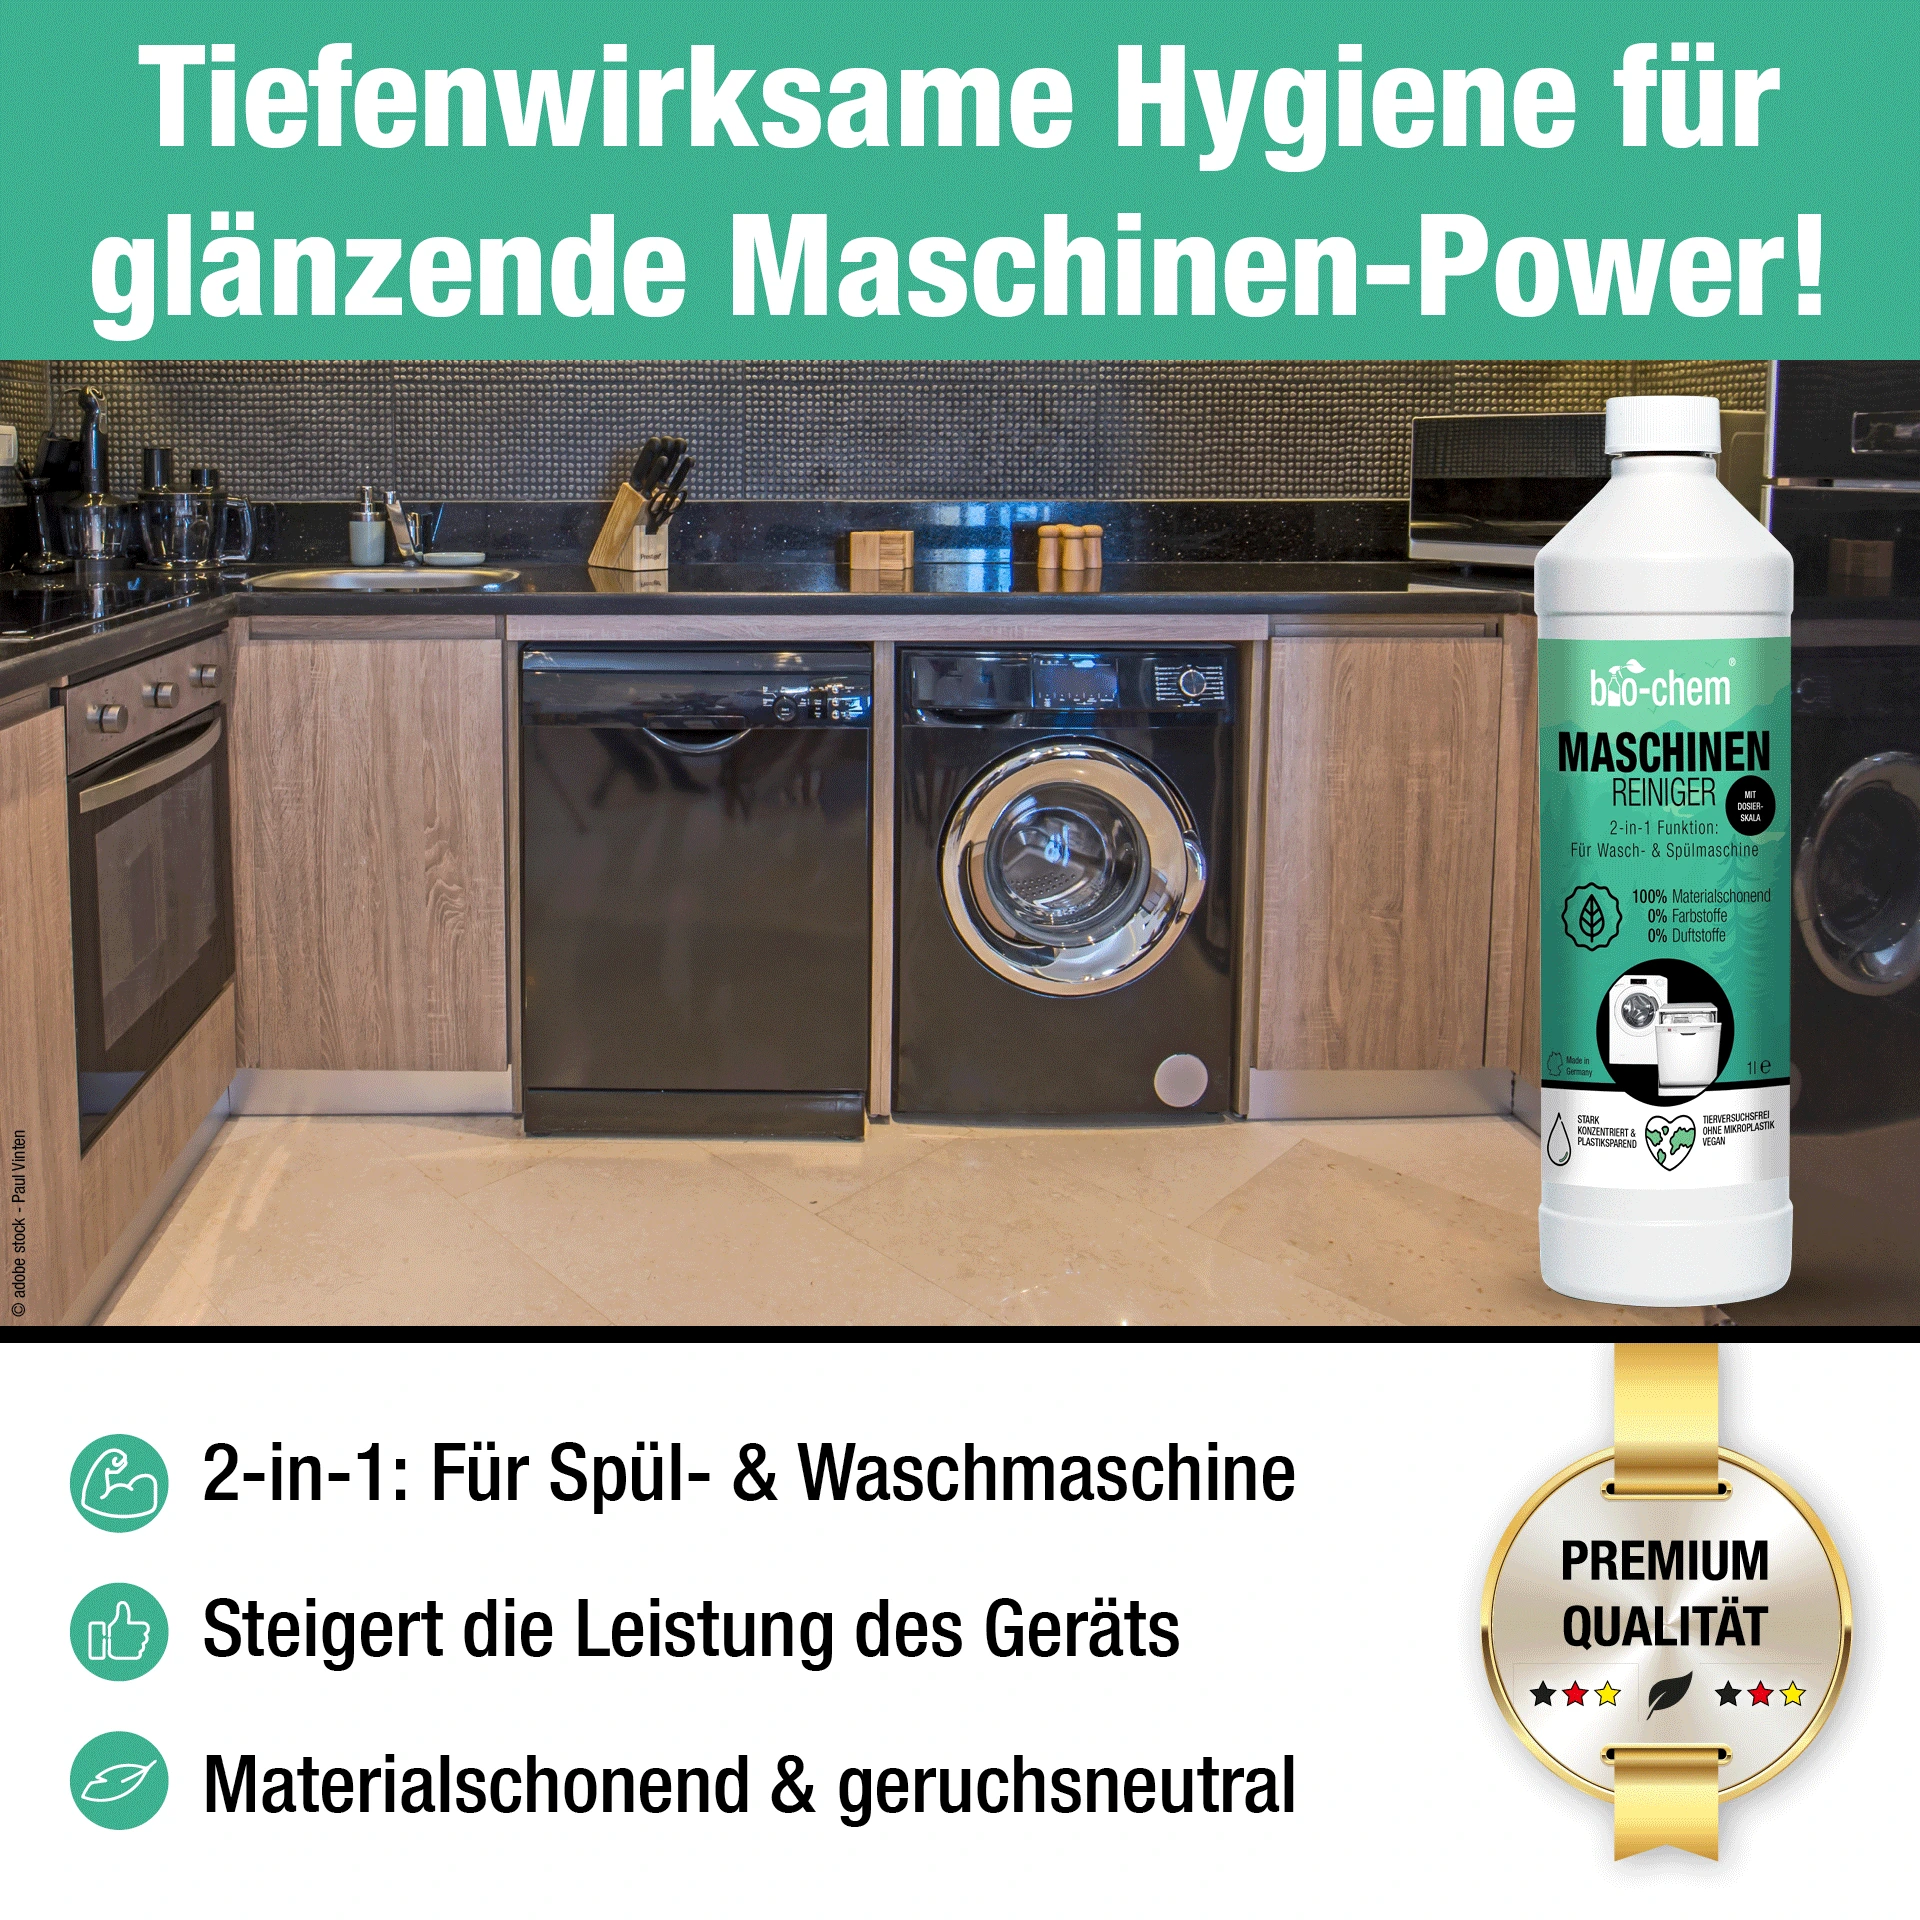 Tiefenwirksame Hygiene für glänzende Maschinen-Power!